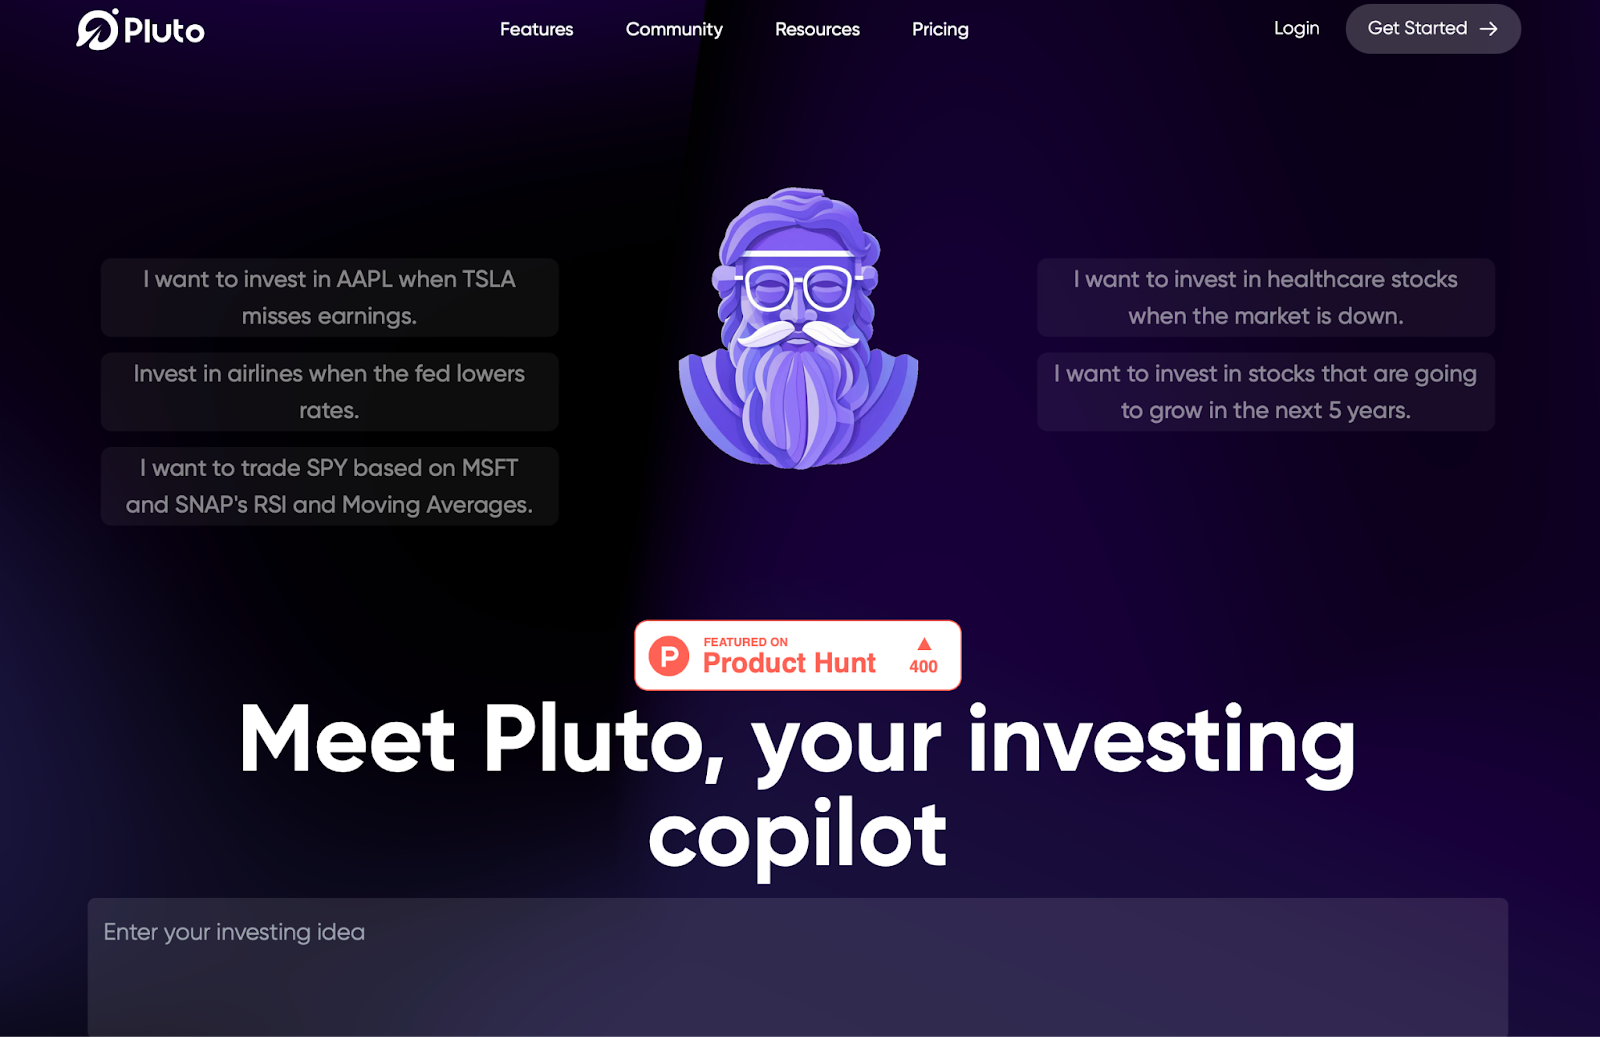 Pluto és un copilot d'inversió impulsat per IA